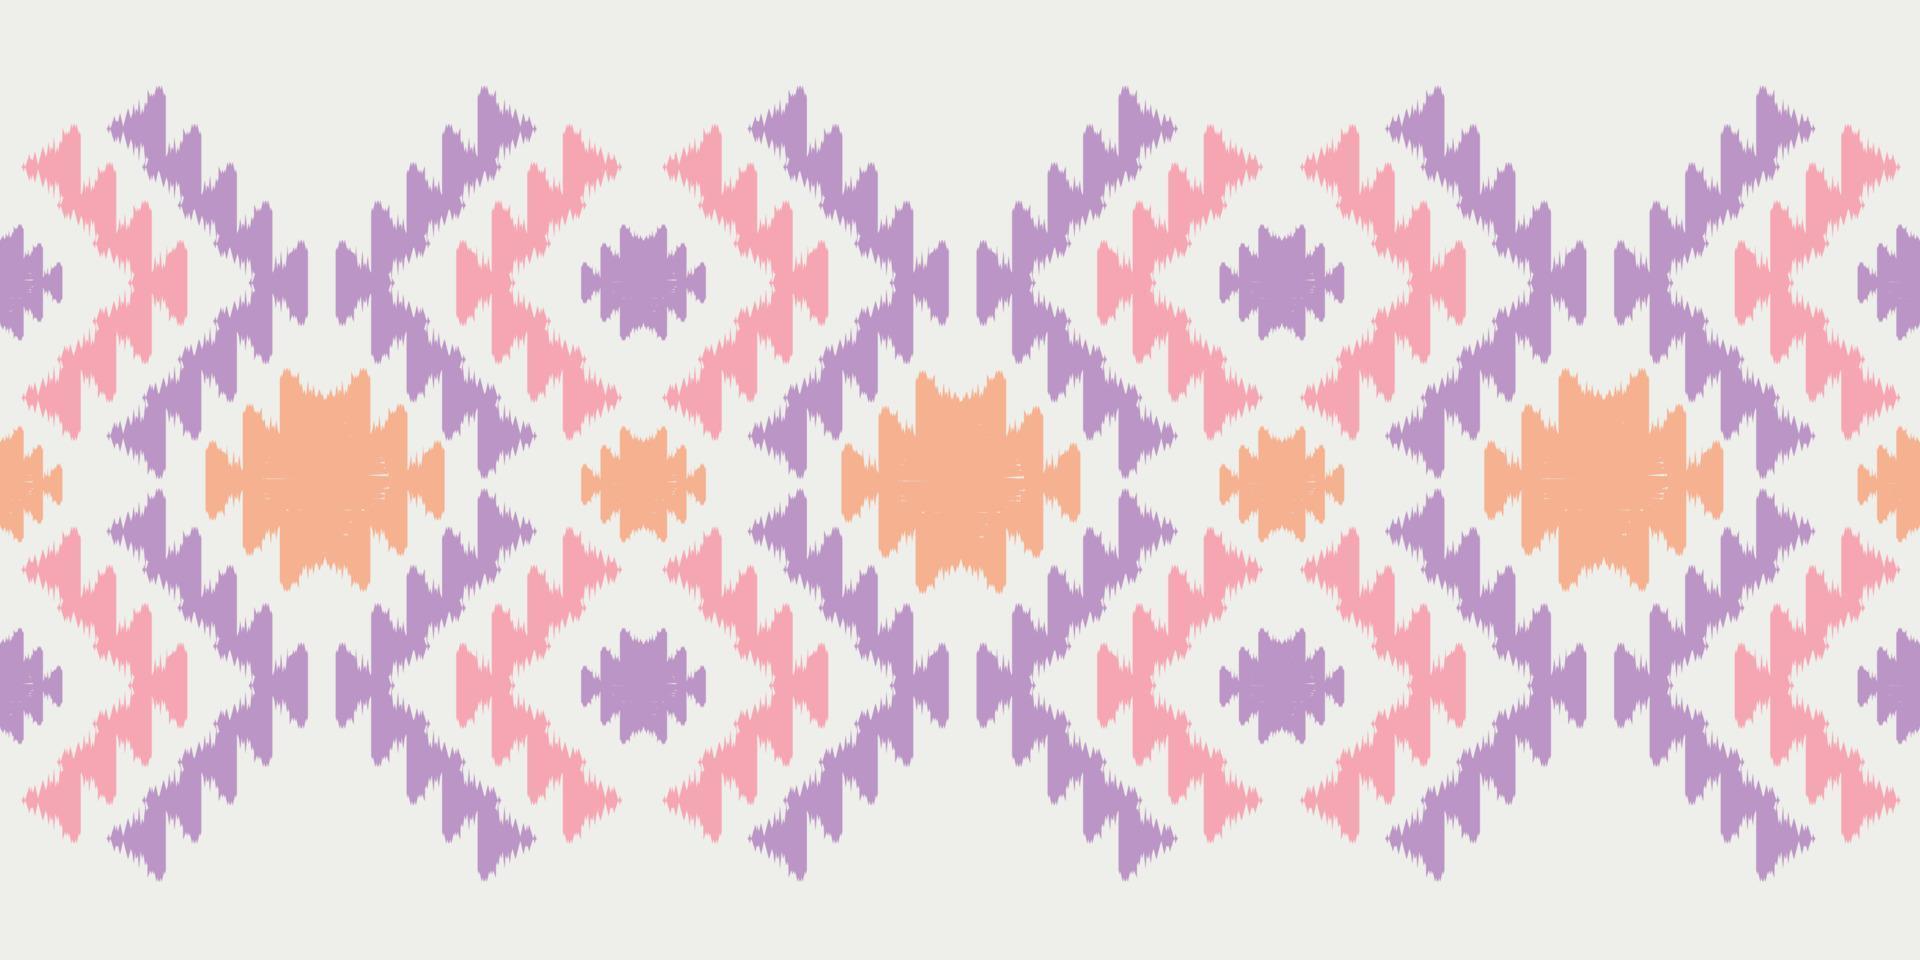 ikat handgemaakte randen prachtige pastelkunst. Navajo chevron naadloze patroon in tribal, folk borduurwerk, Mexicaanse Azteekse geometrische kunst ornament print.design voor tapijt, inwikkeling, stof, dekking, textiel vector